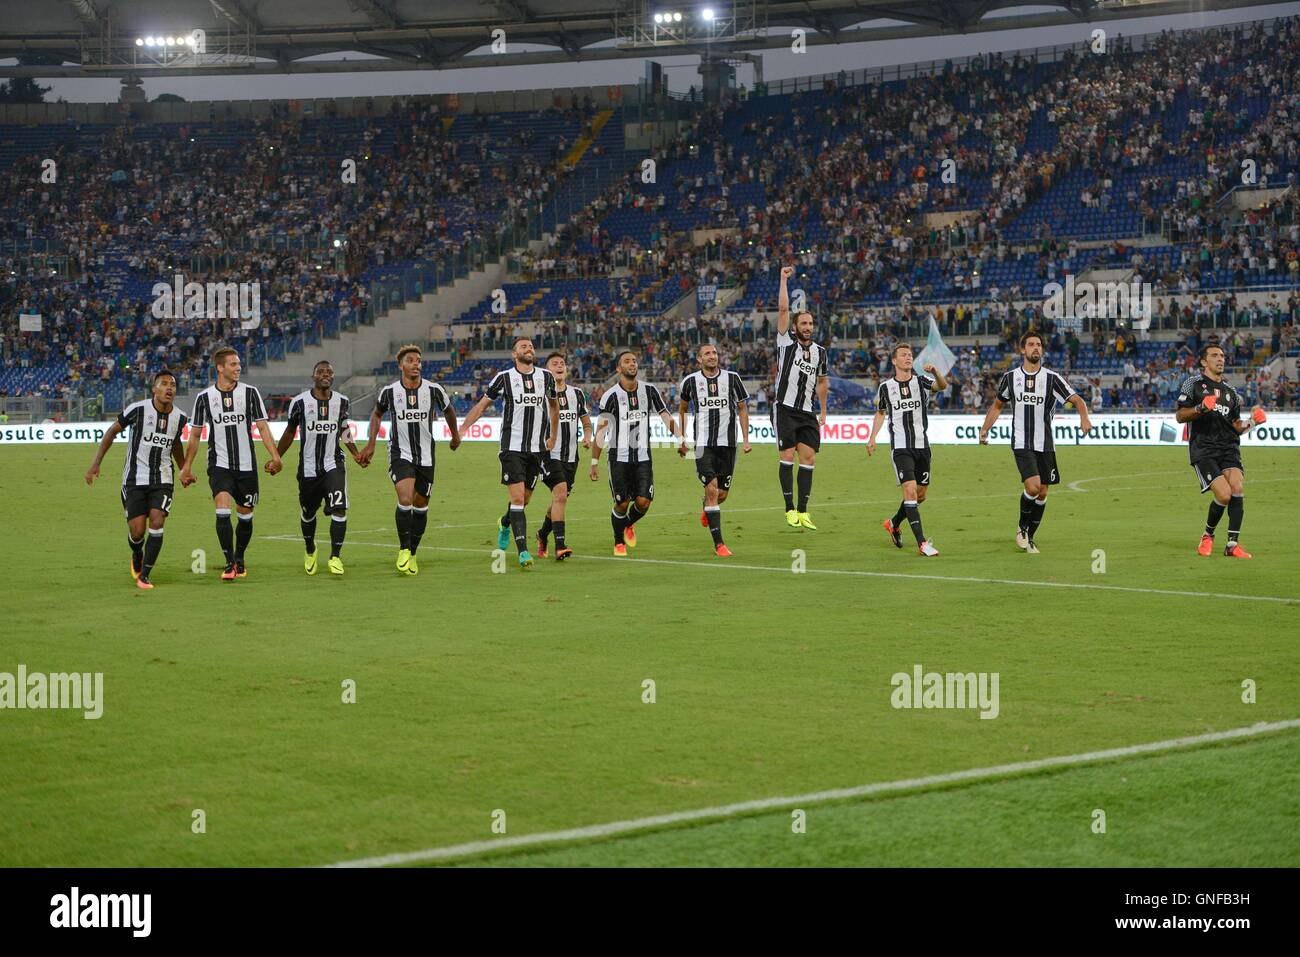 F.C. Los jugadores de la Juventus celebra durante el partido de fútbol de la Serie A italiana entre el S.S. Lazio y F.C. La Juventus en el Estadio Olímpico de Roma, el 27 de agosto de 2016. Foto de stock